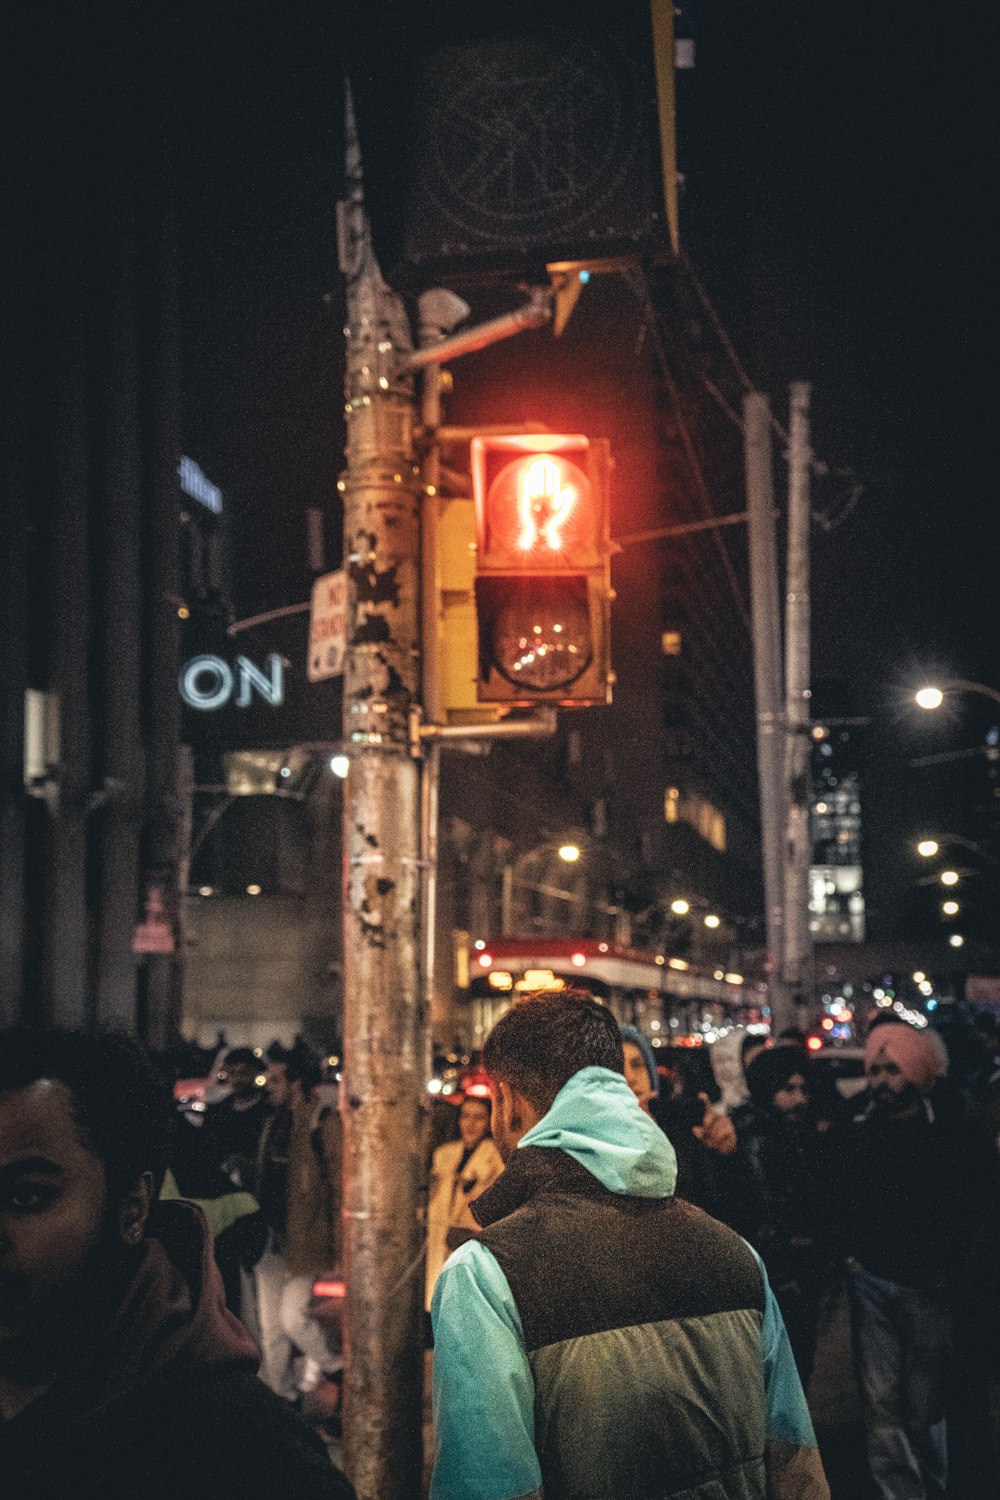 une foule de personnes debout dans une rue à côté d’un feu de circulation